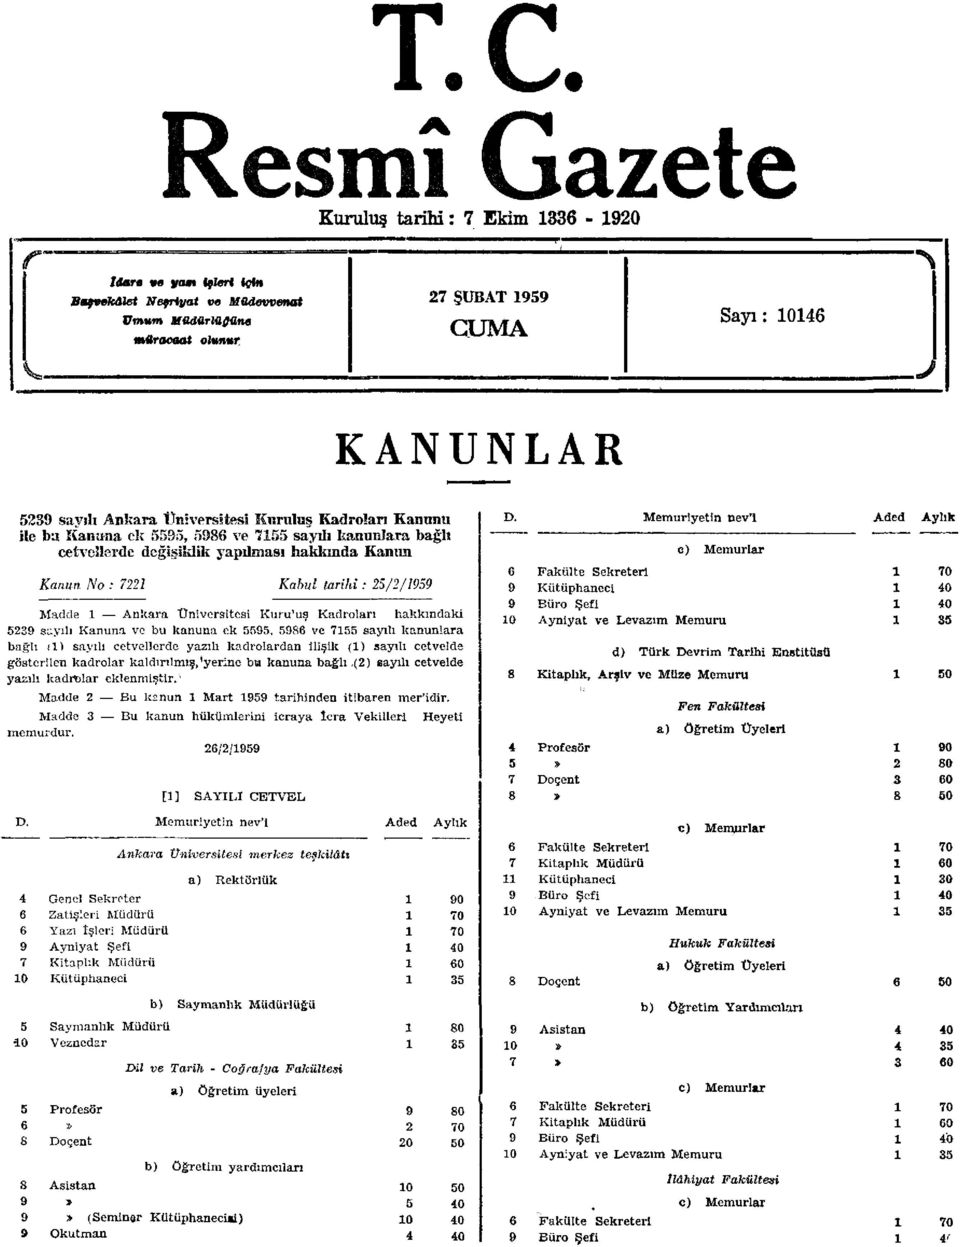 Madde Ankara Üniversitesi Kuru'uş Kadroları hakkındaki sayılı Kanuna ve bu kanuna ek, ve sayılı kanunlara bağlı () sayılı cetvellerde yazılı kadrolardan ilişik () sayılı cetvelde gösterilen kadrolar